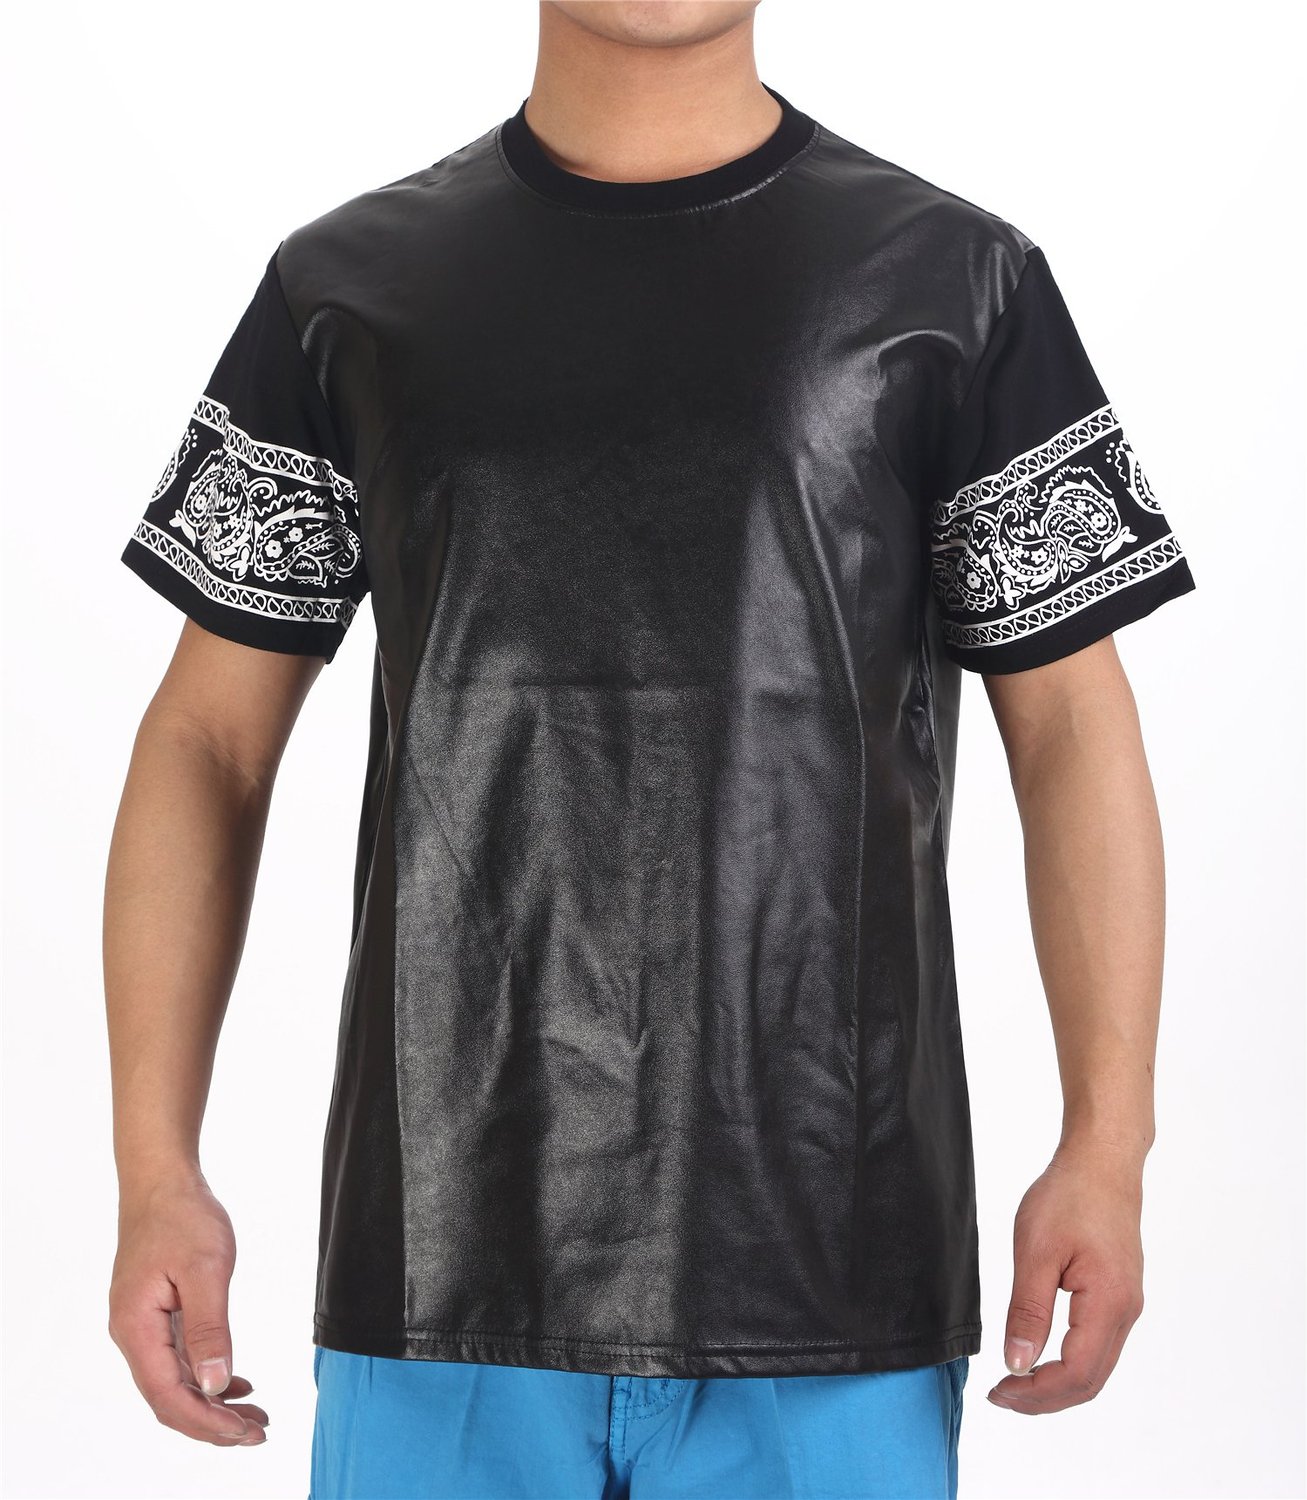 Pizoff Unisex Leather Sleeves Luxury T-shirts